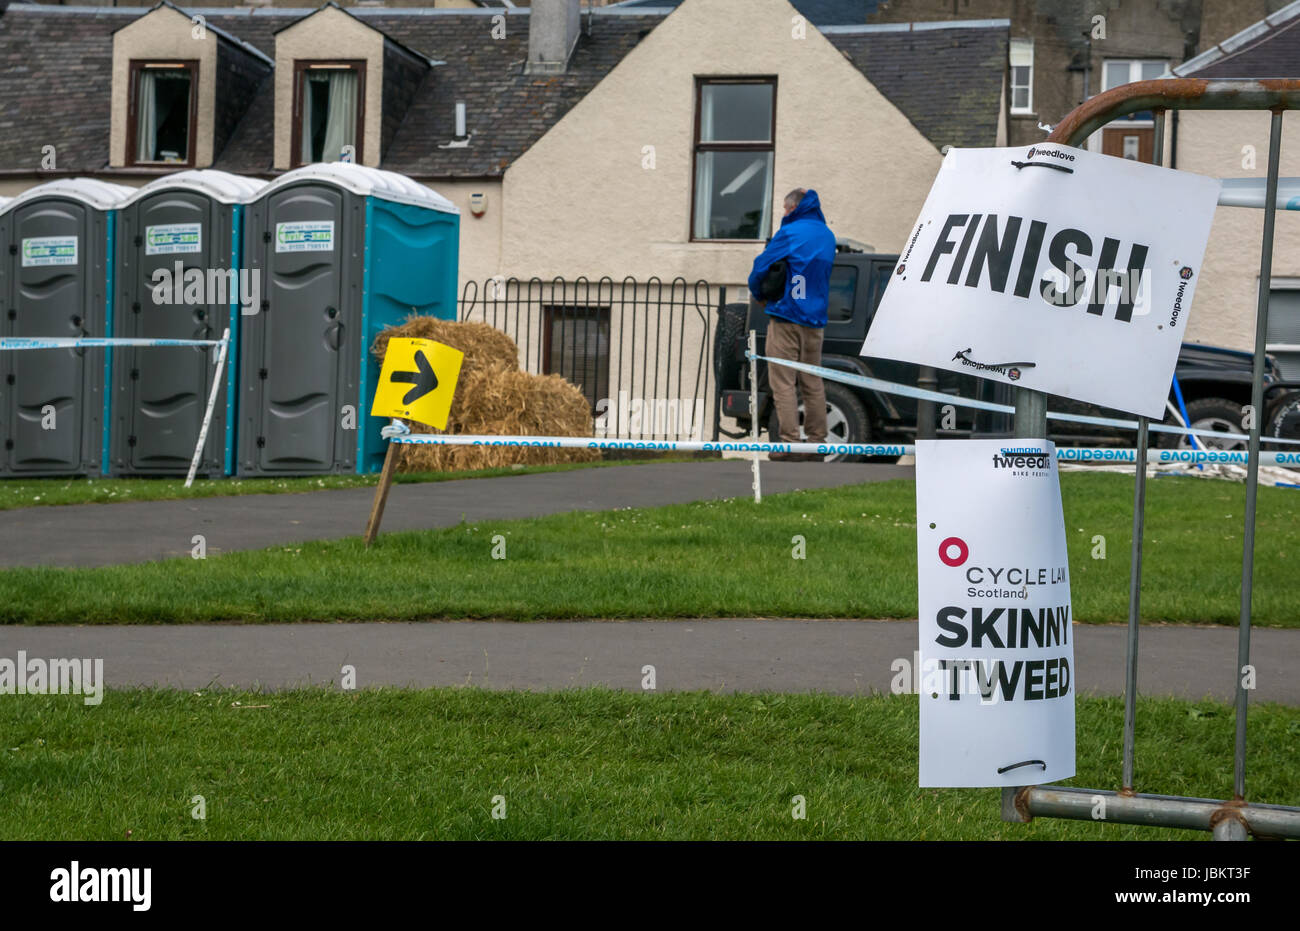 Linea di finitura, Skinny Tweed Tweedlove distanza lunga manifestazione ciclistica 2017, Peebles, Scottish Borders, Regno Unito Foto Stock